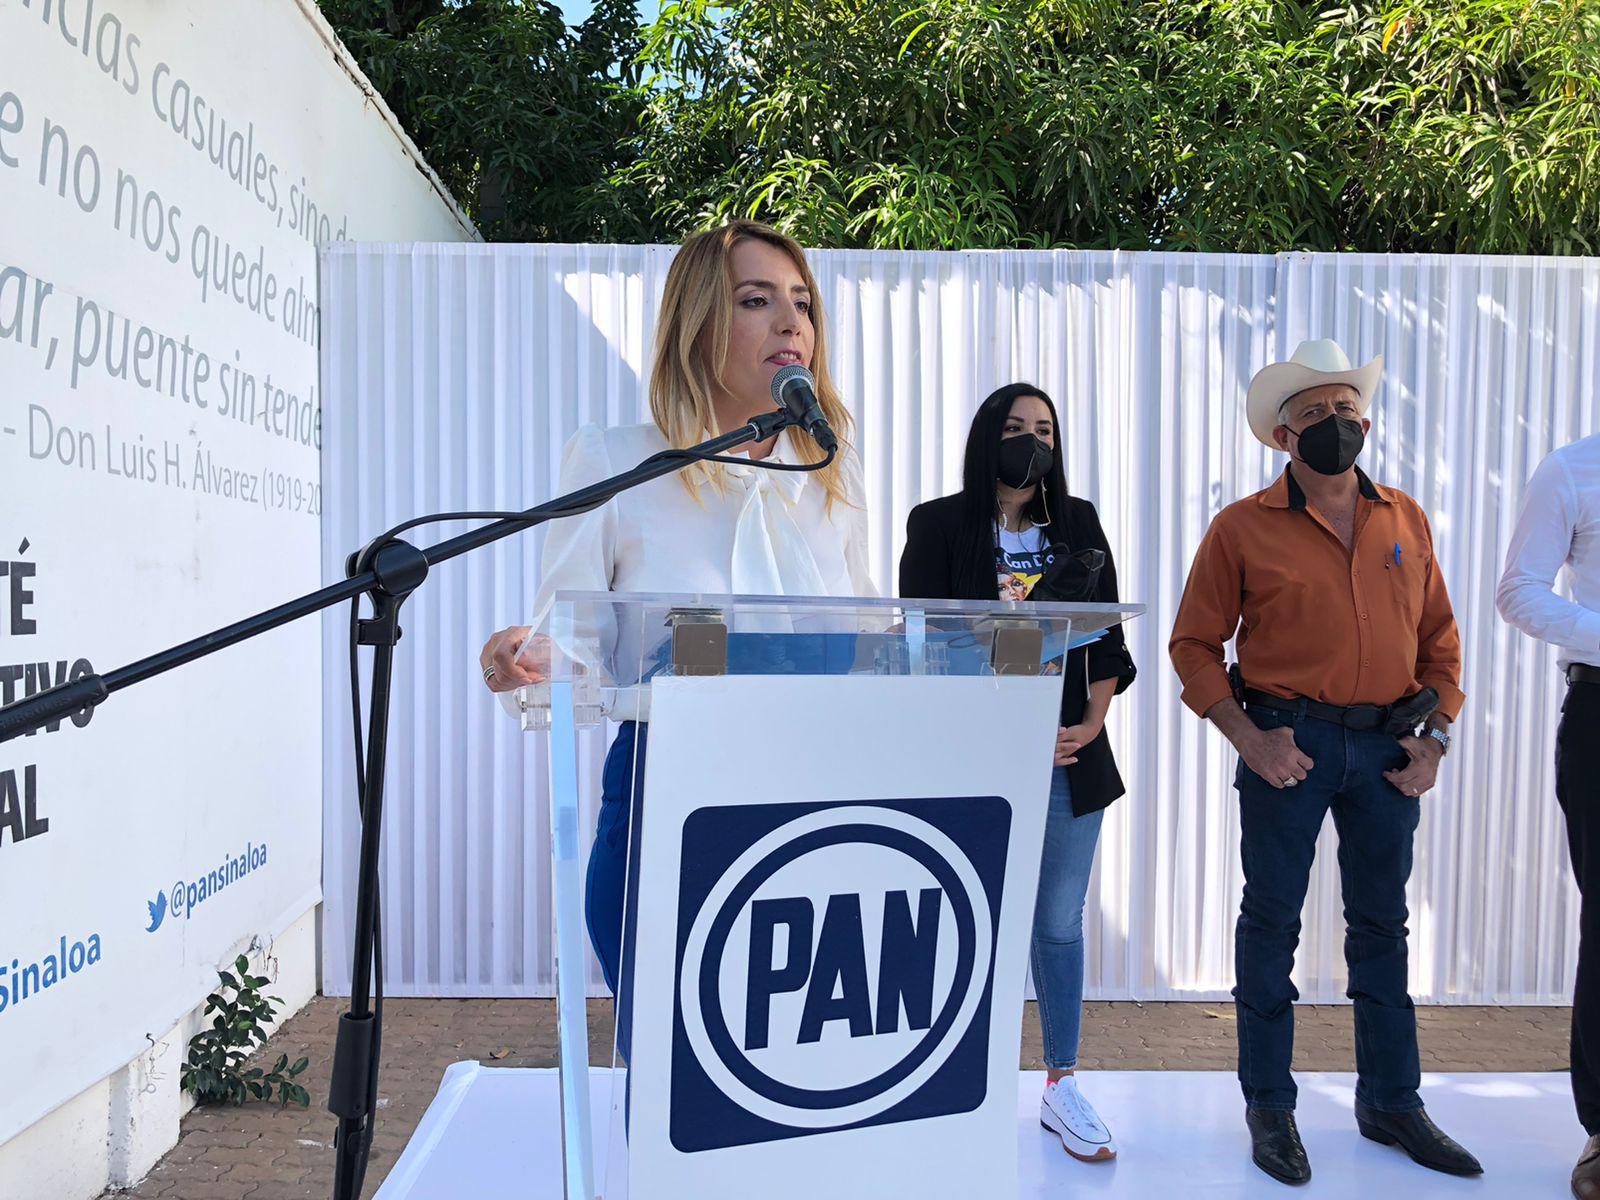 $!No se conseguirá el 40% de los votos que requiere la consulta, afirma PAN Sinaloa